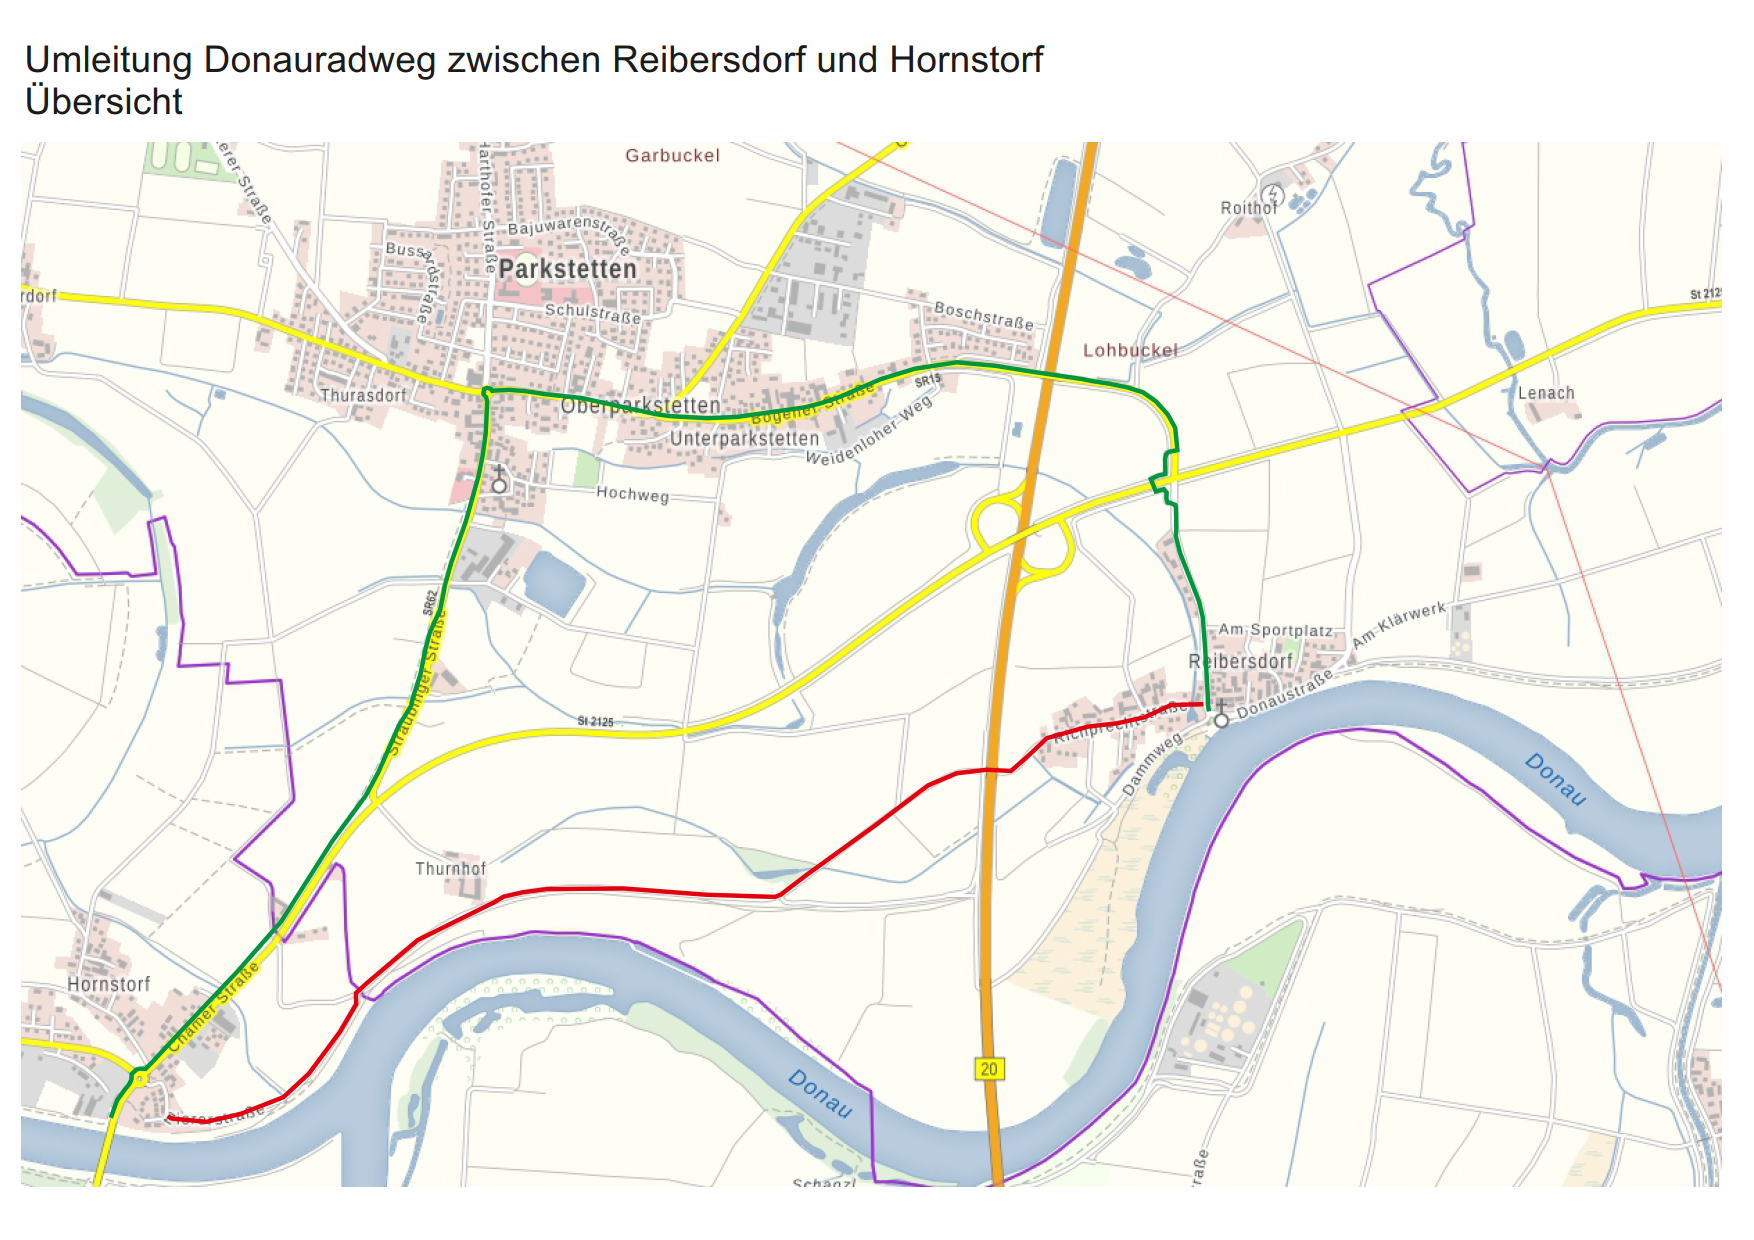 Vollsperrung des Donauradwegs zwischen Reibersdorf und Hornstorf bis 31. Dezember